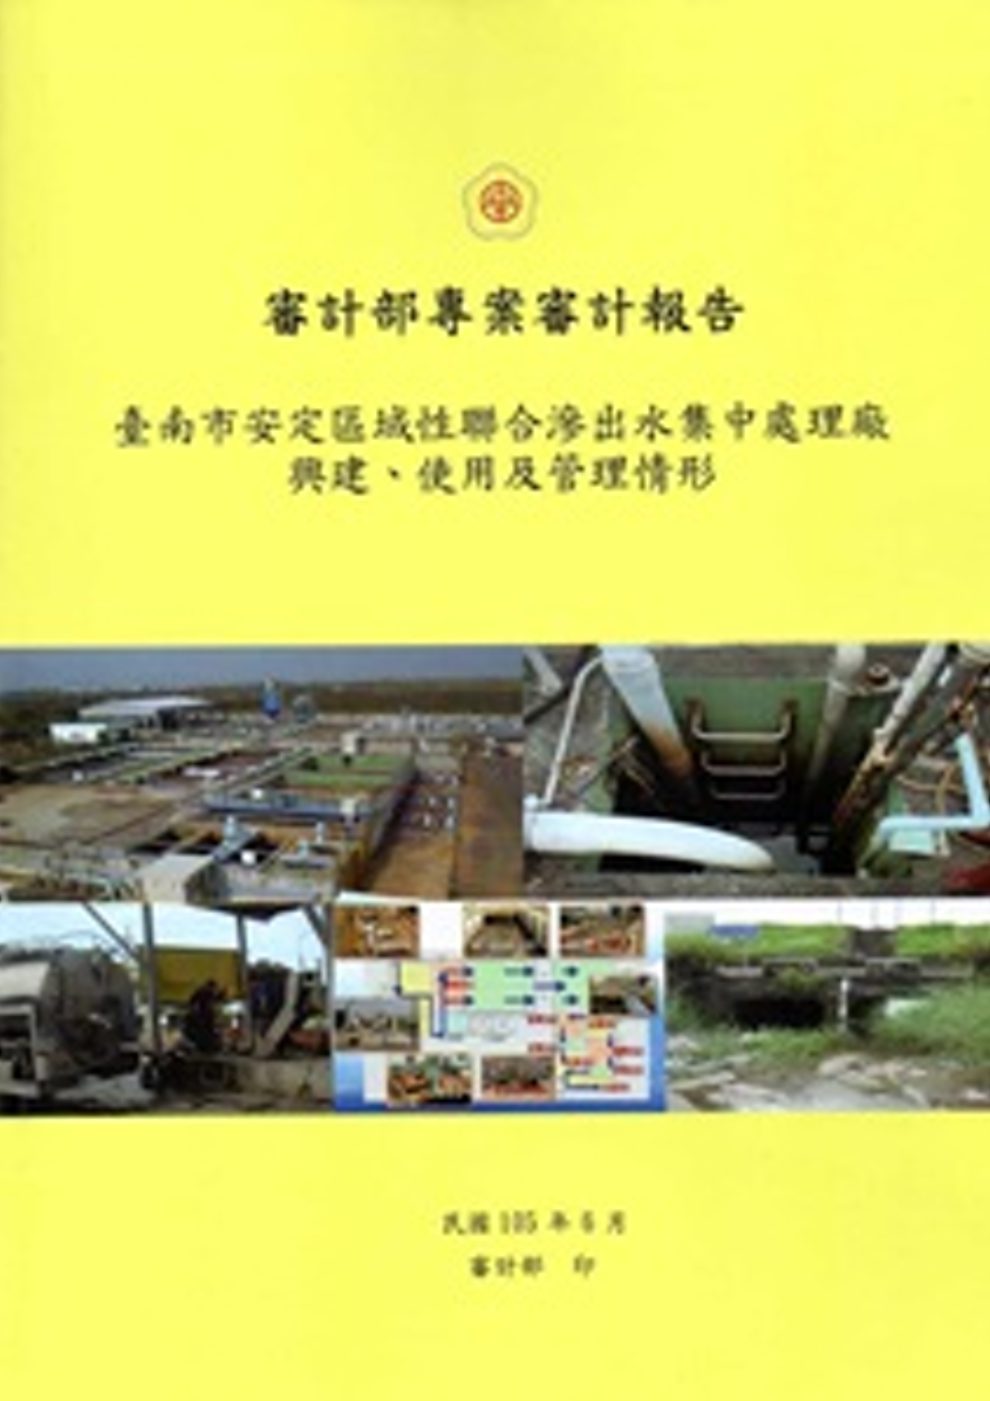 臺南市安定區域性聯合滲出水集中處理廠興建、使用及管理情形